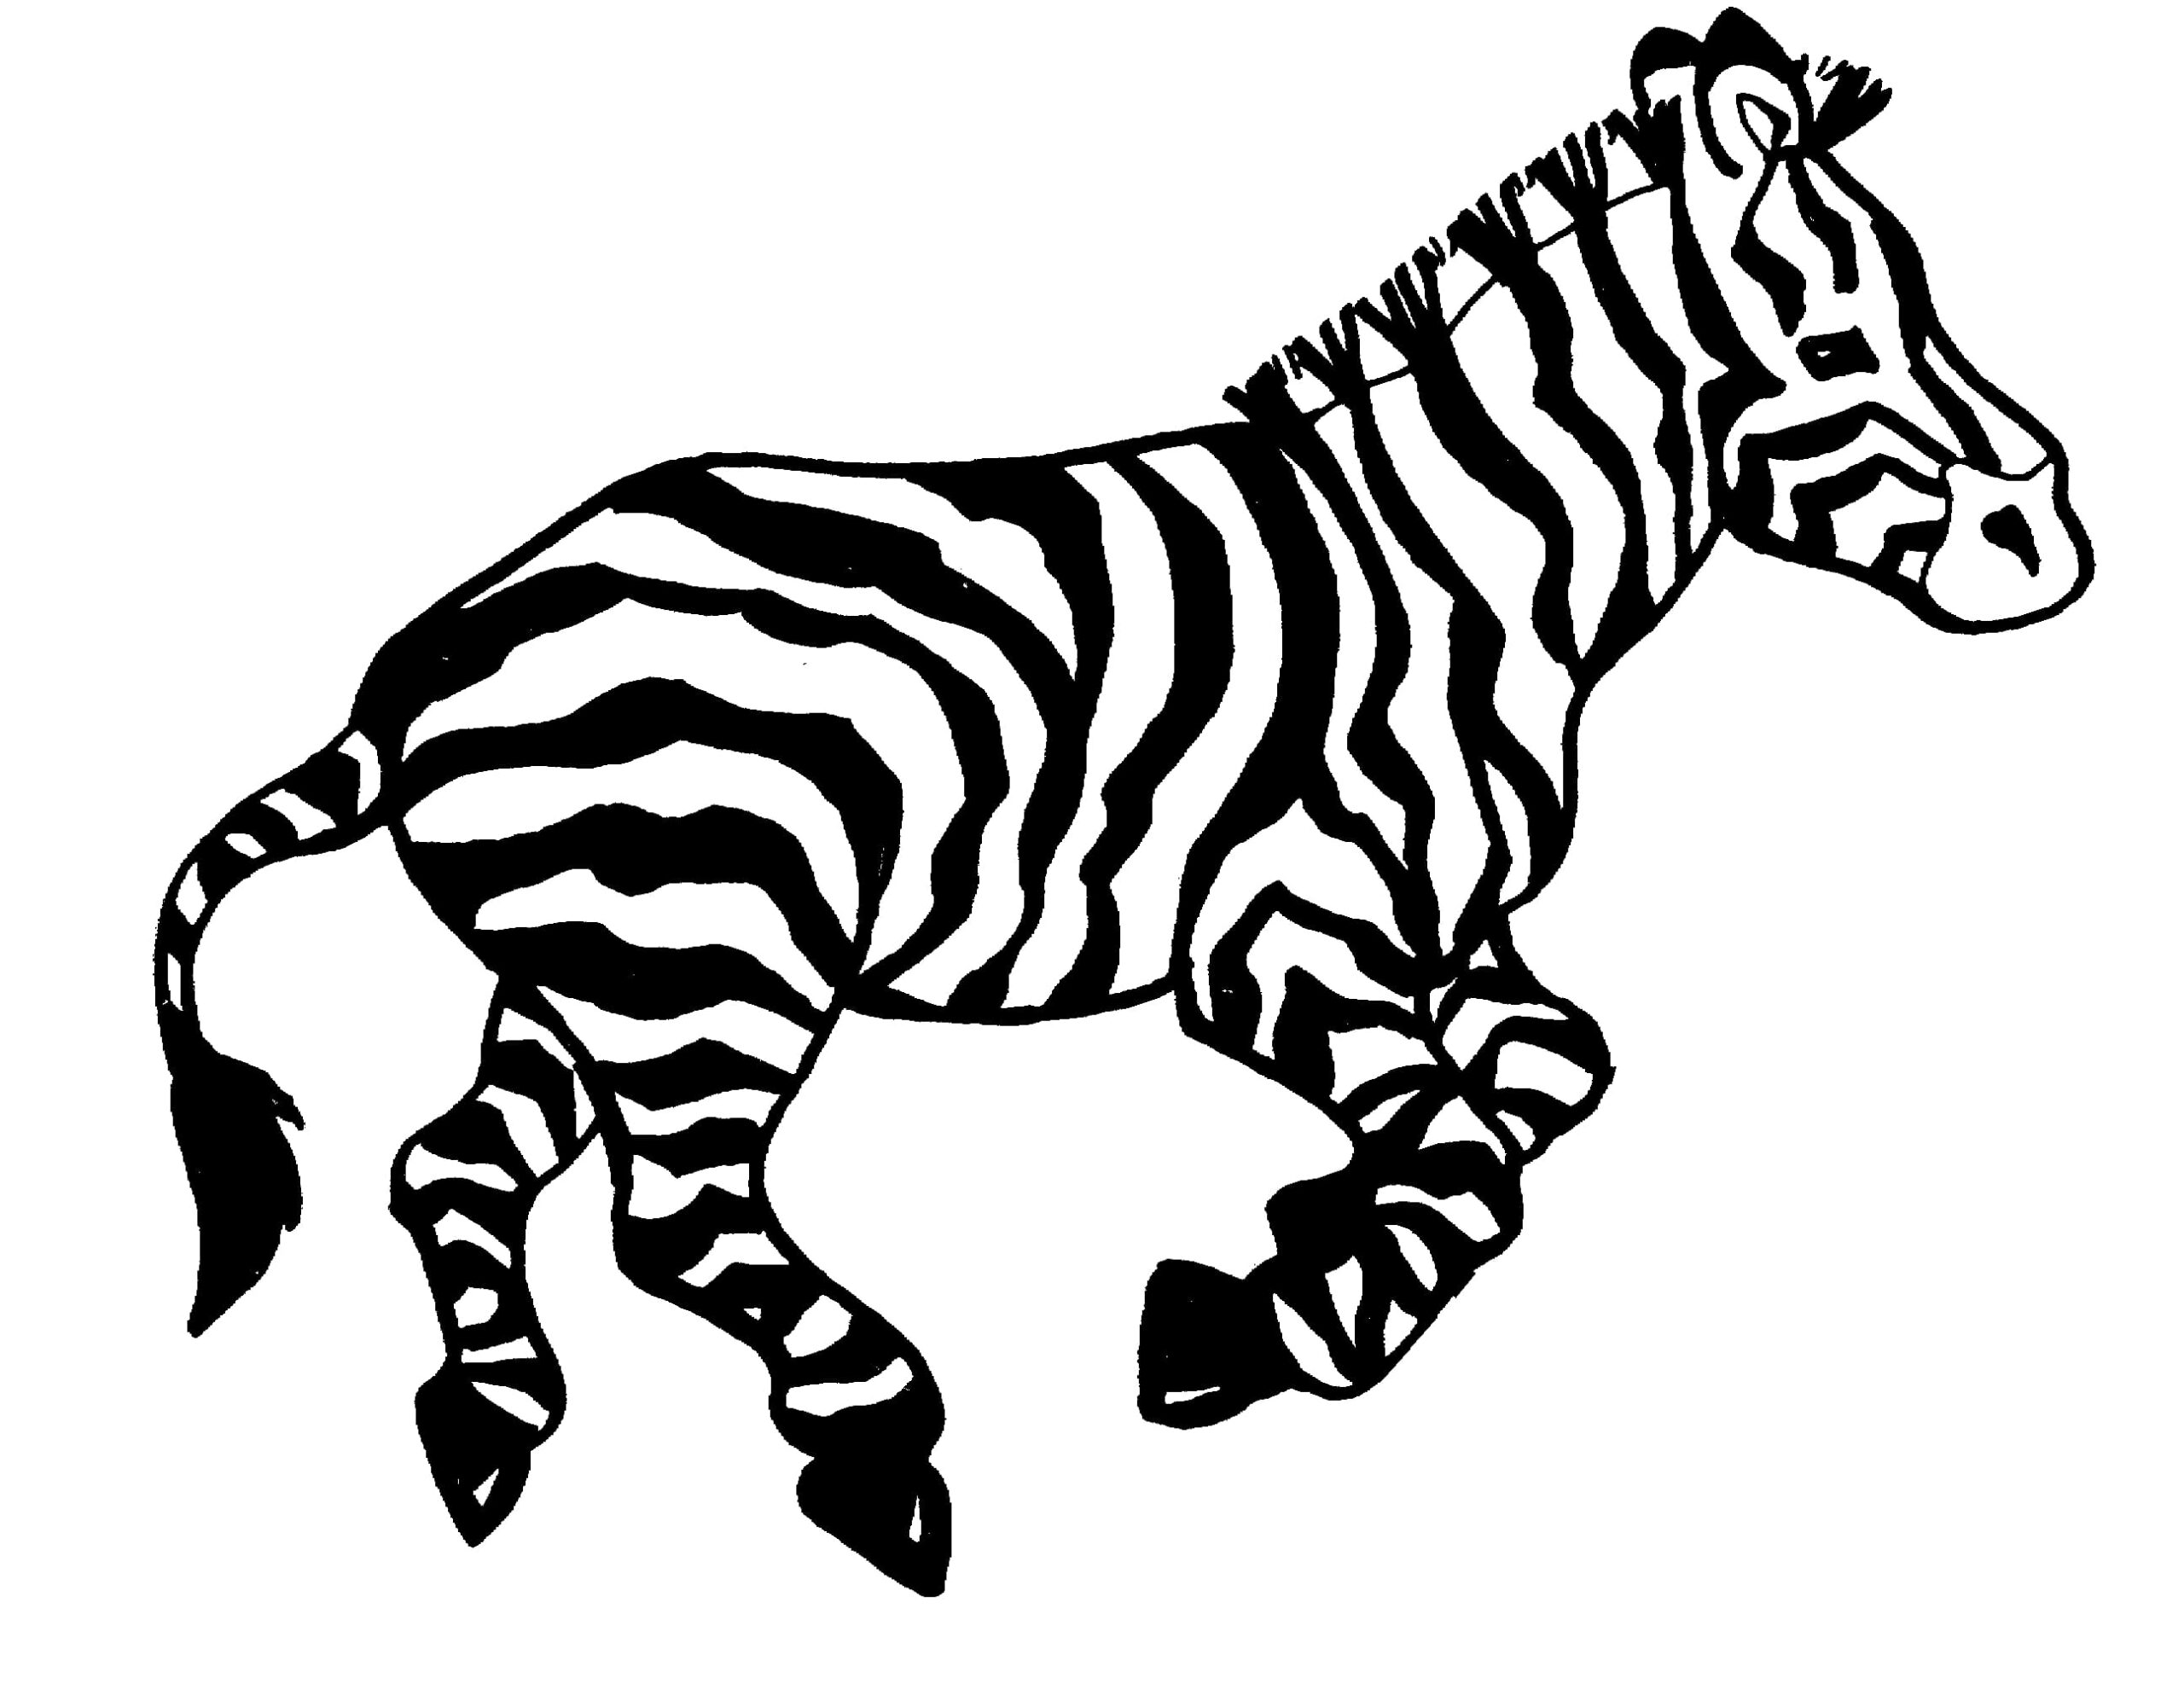 Zebra-omtrek afdrukken